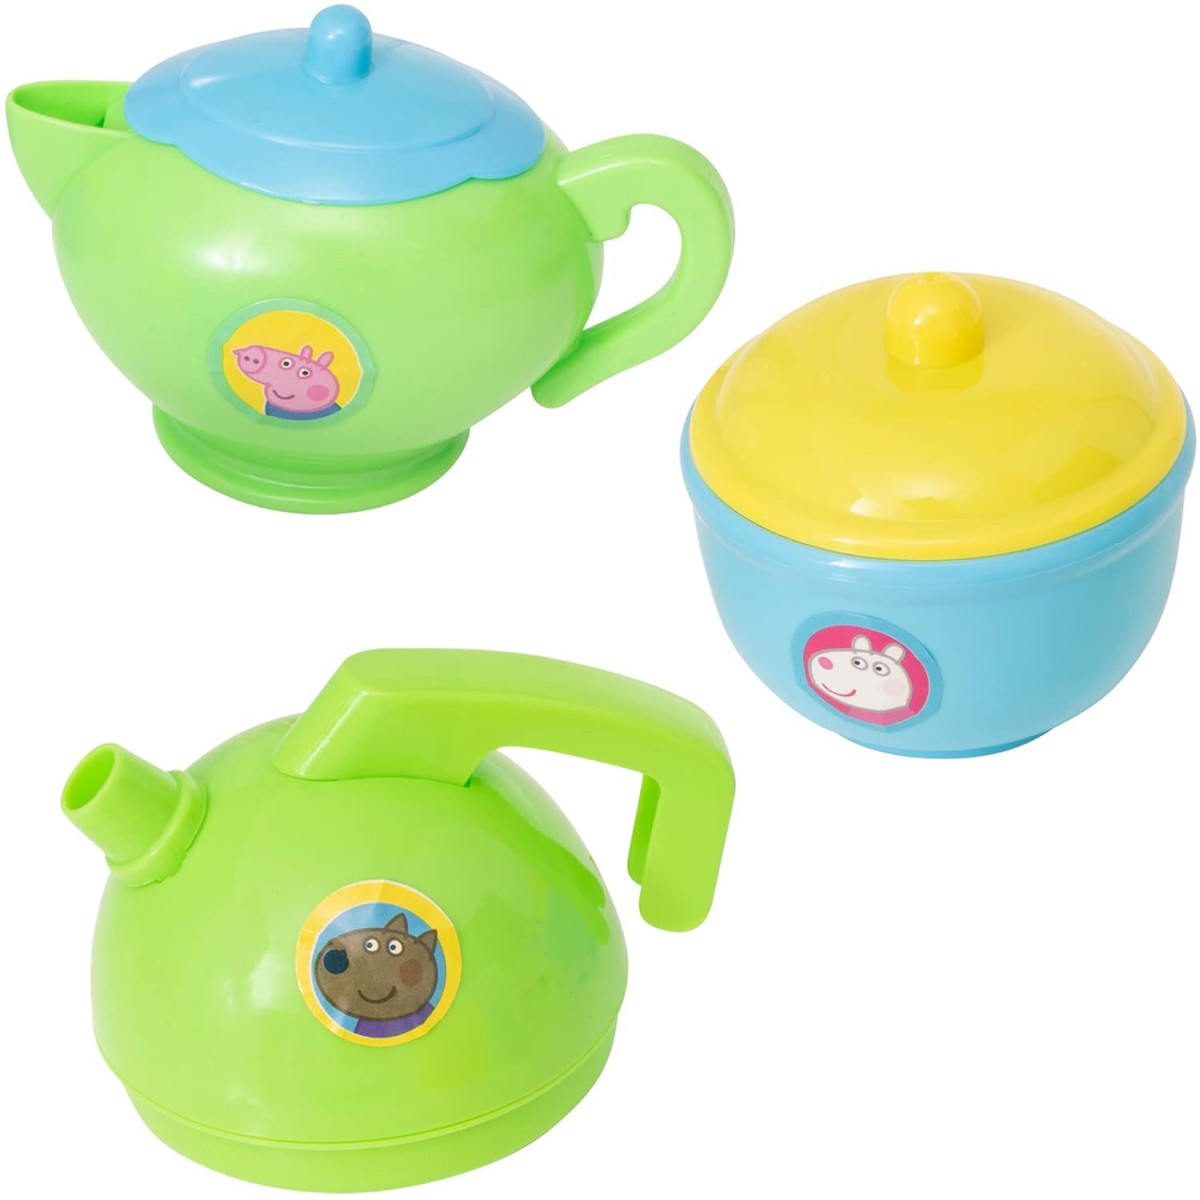 Peppa Pig Tea Set Kitchen Sets & Appliances for Kids age 3Y+ 